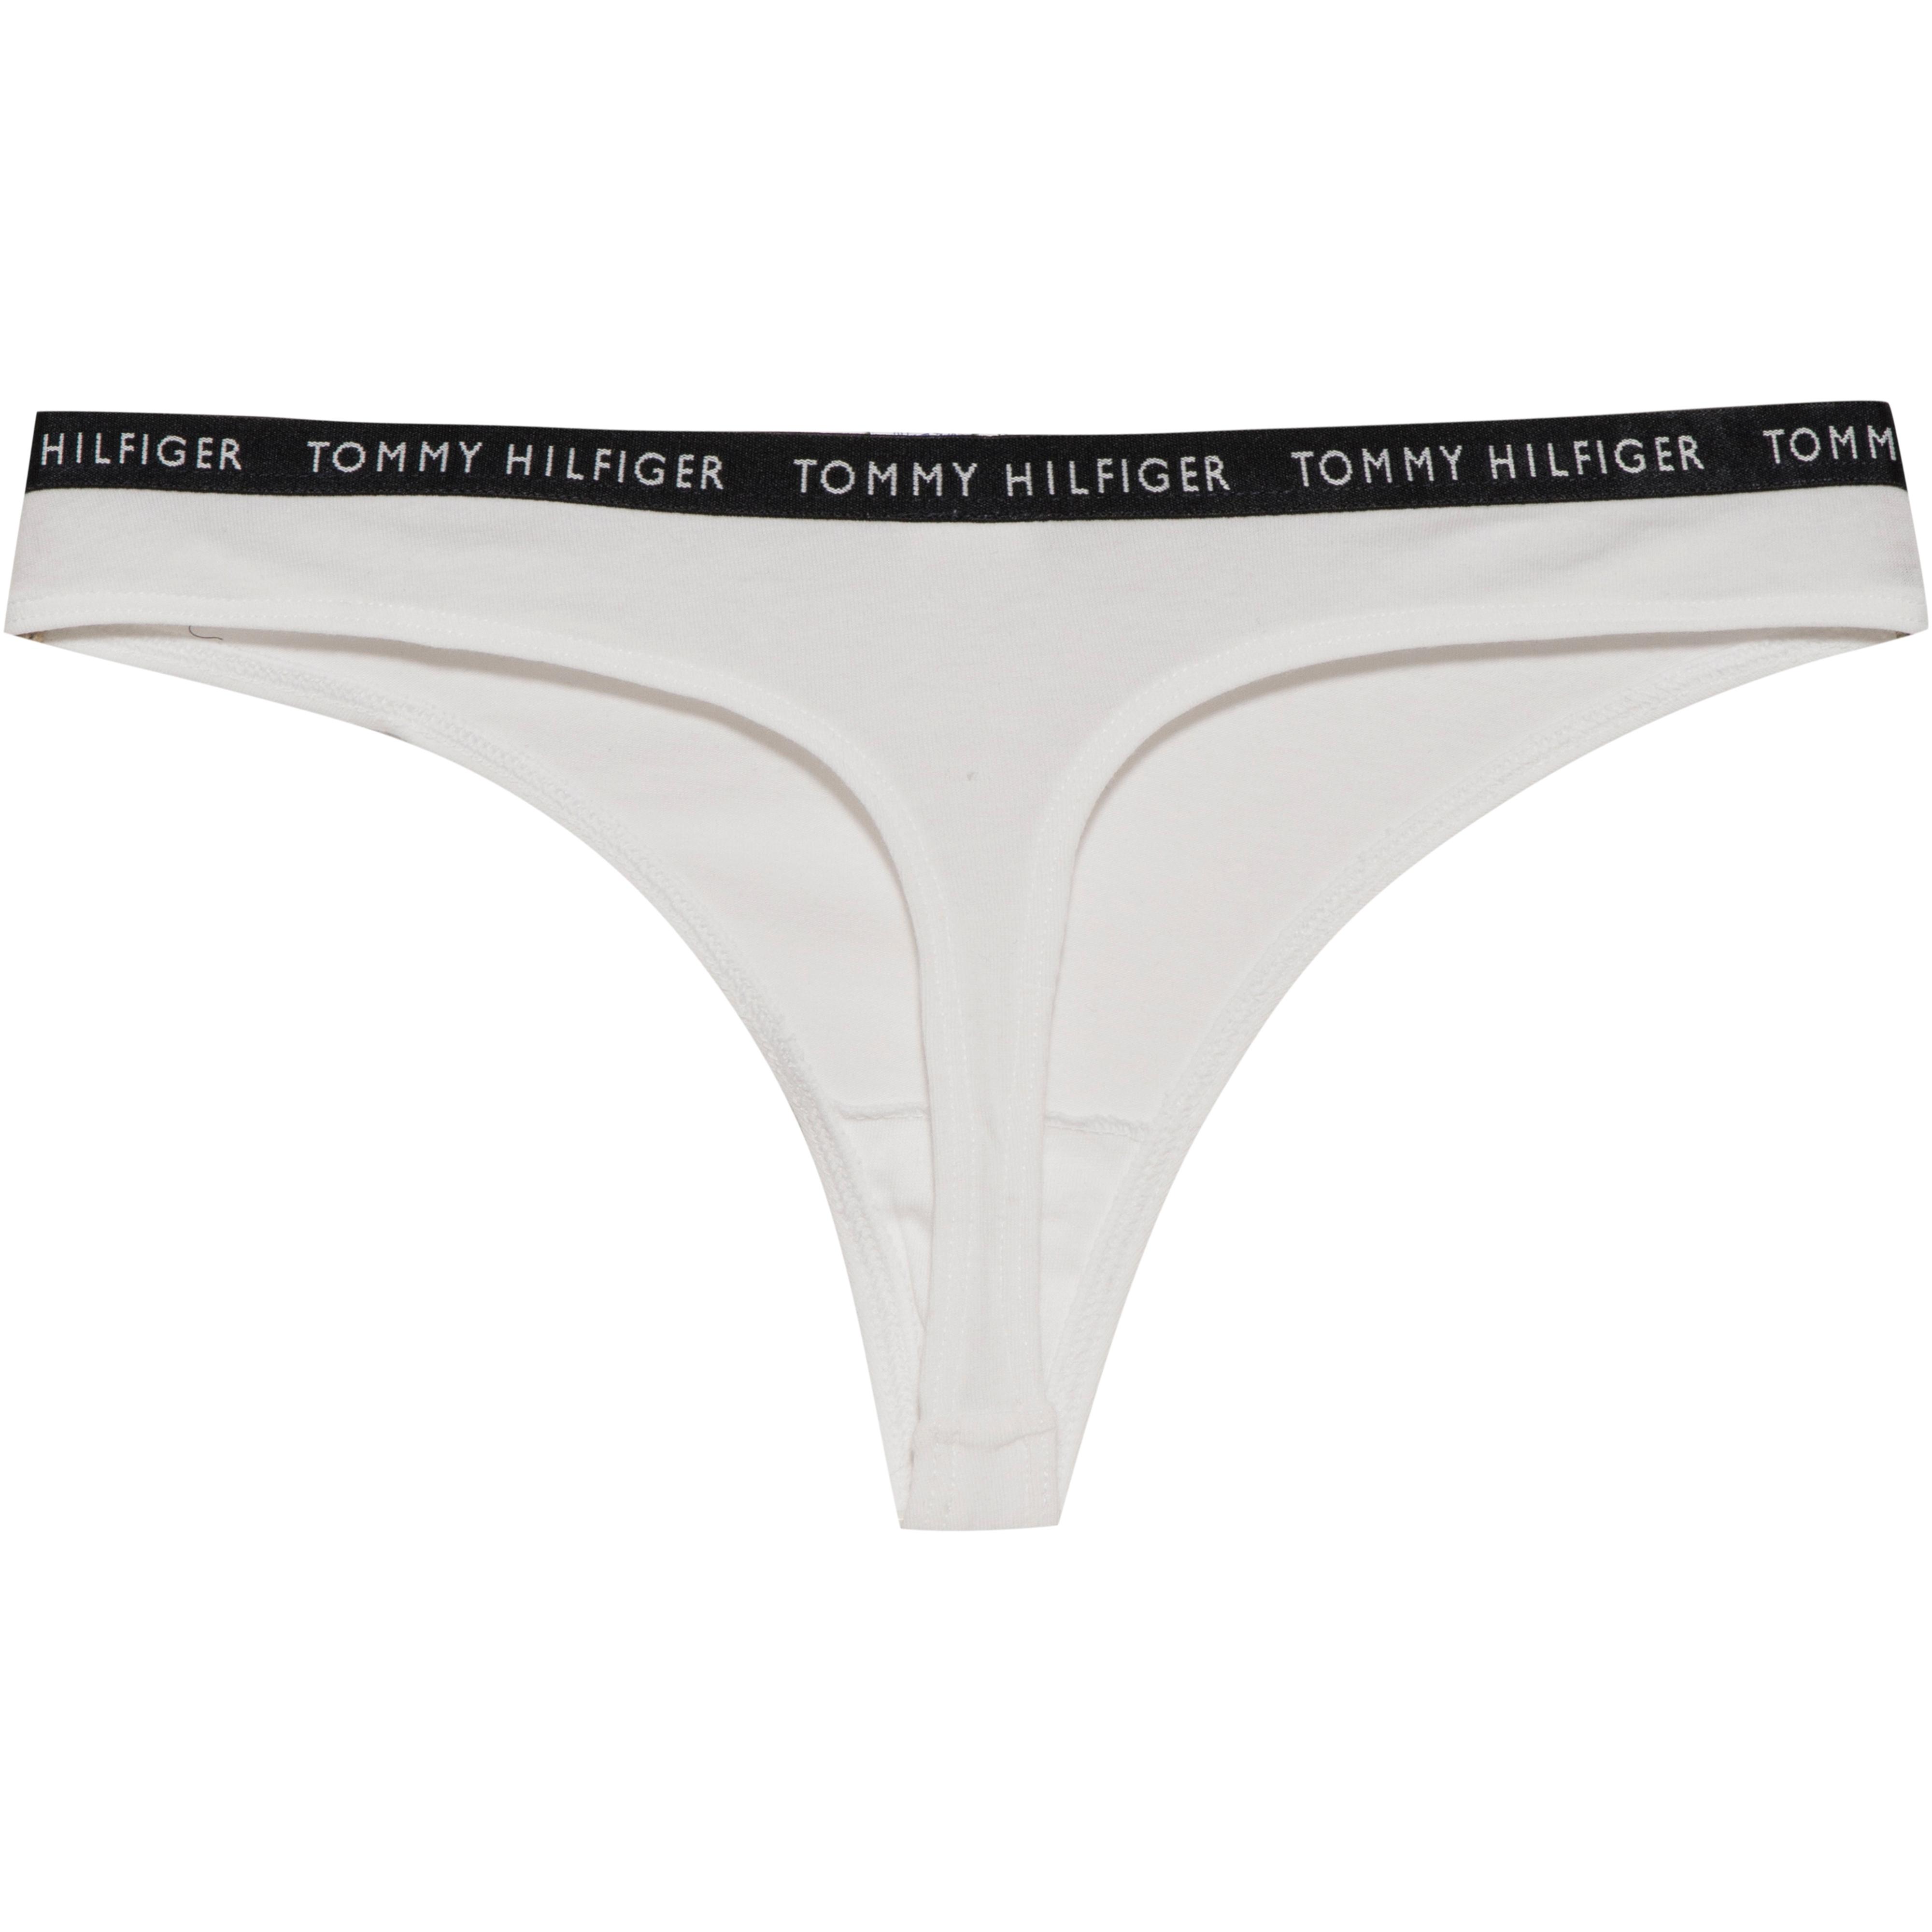 Calvin Klein Unterhose Damen black-white-black im Online Shop von  SportScheck kaufen